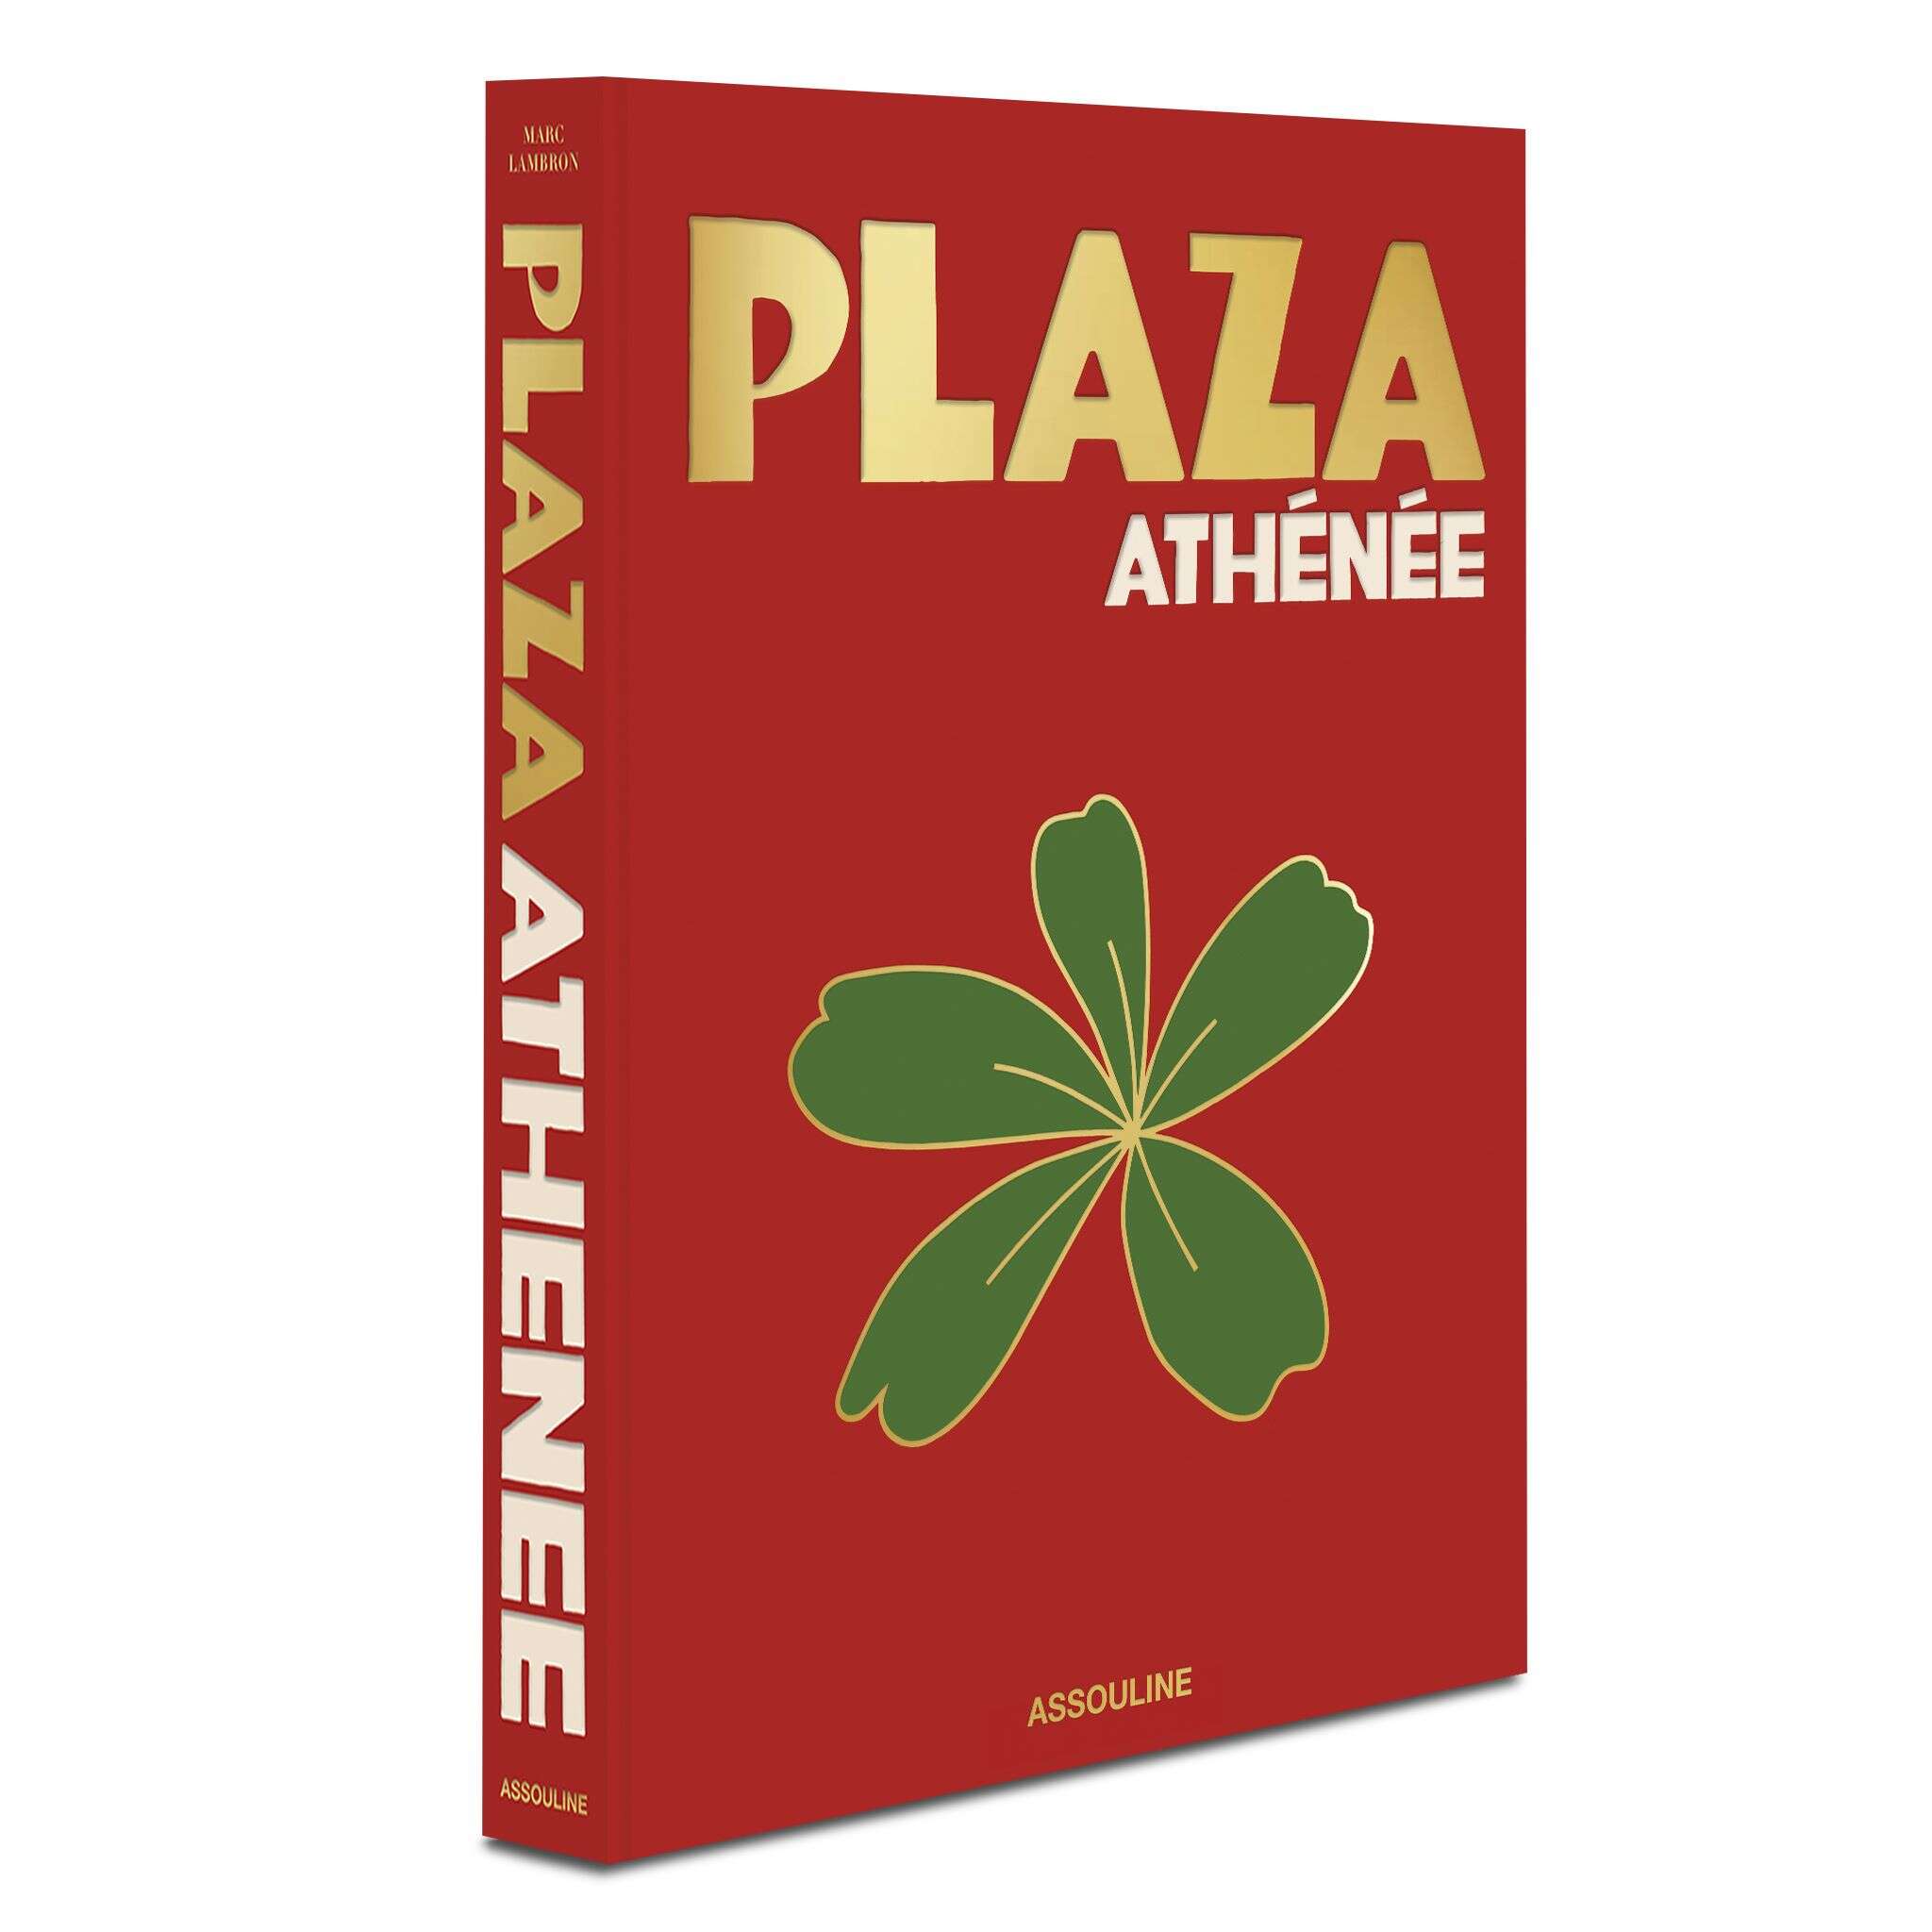 Assouline Book on Plaza Athénée